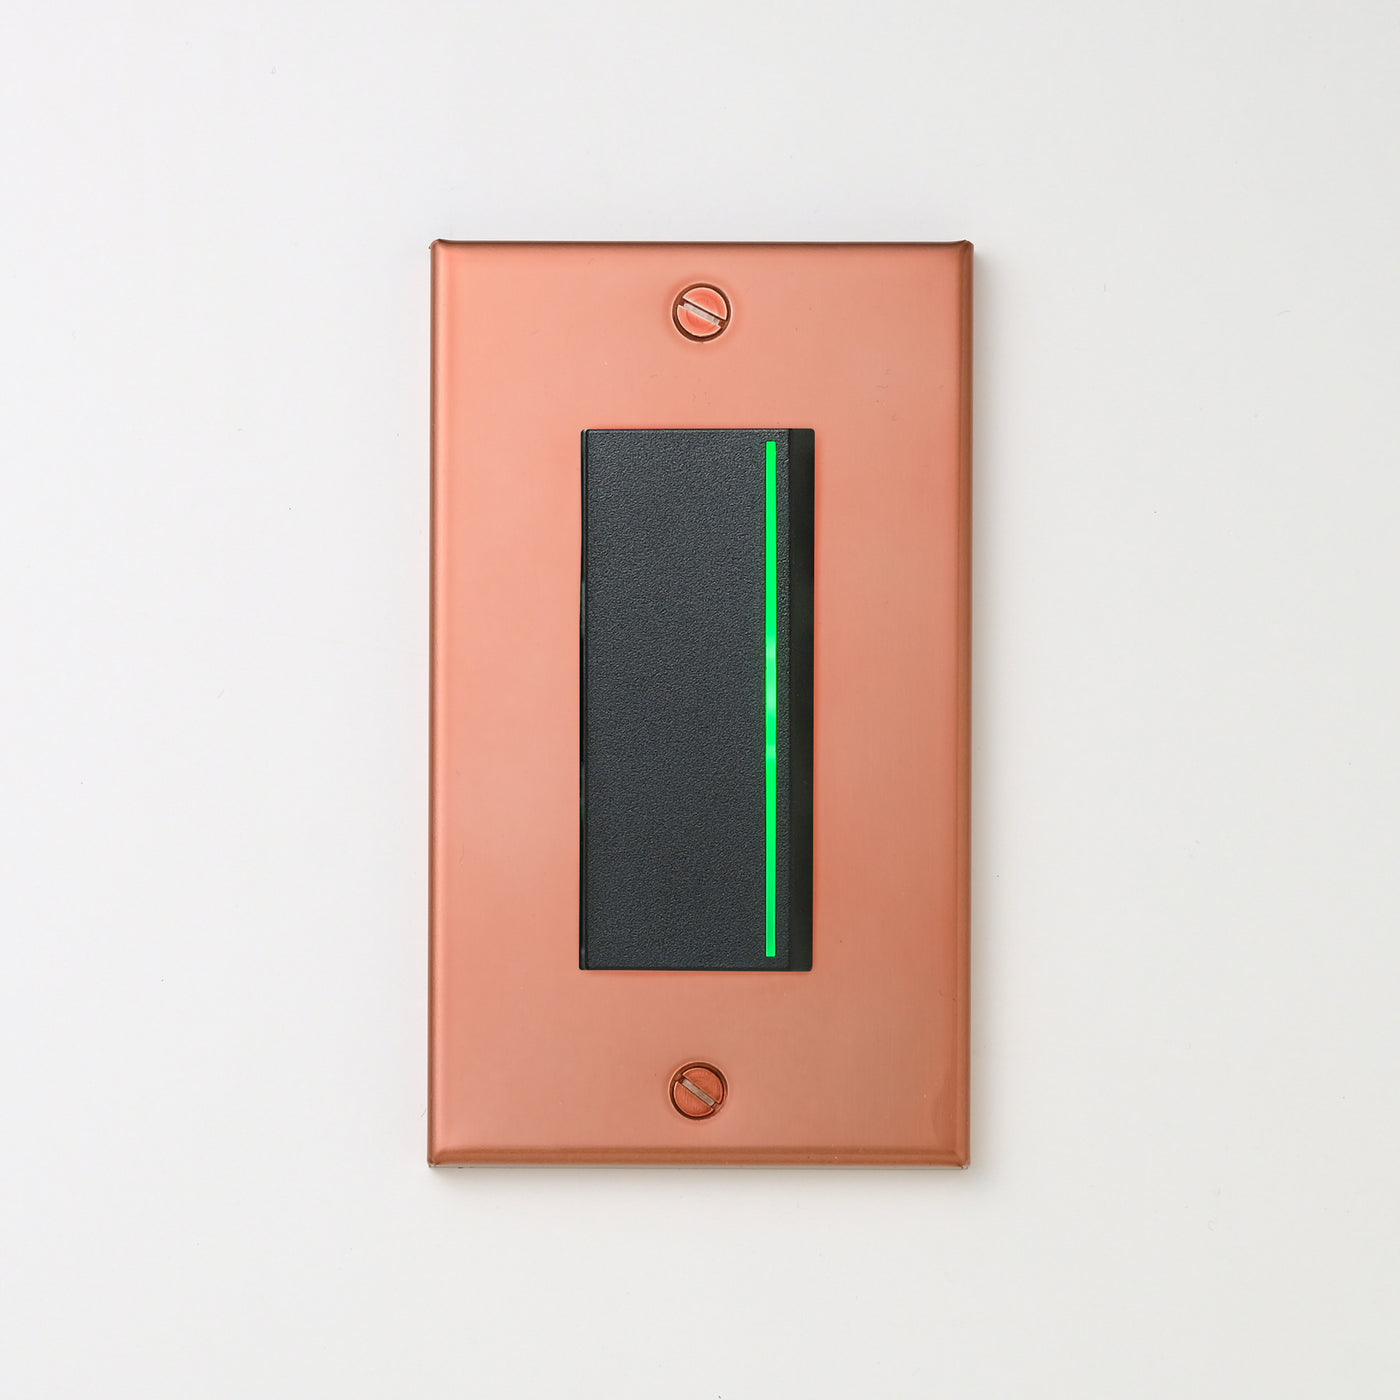 銅色（マット） プレート <br>+ NK 片切、3路ガイドランプ（グリーン）付スイッチシングル  ブラック